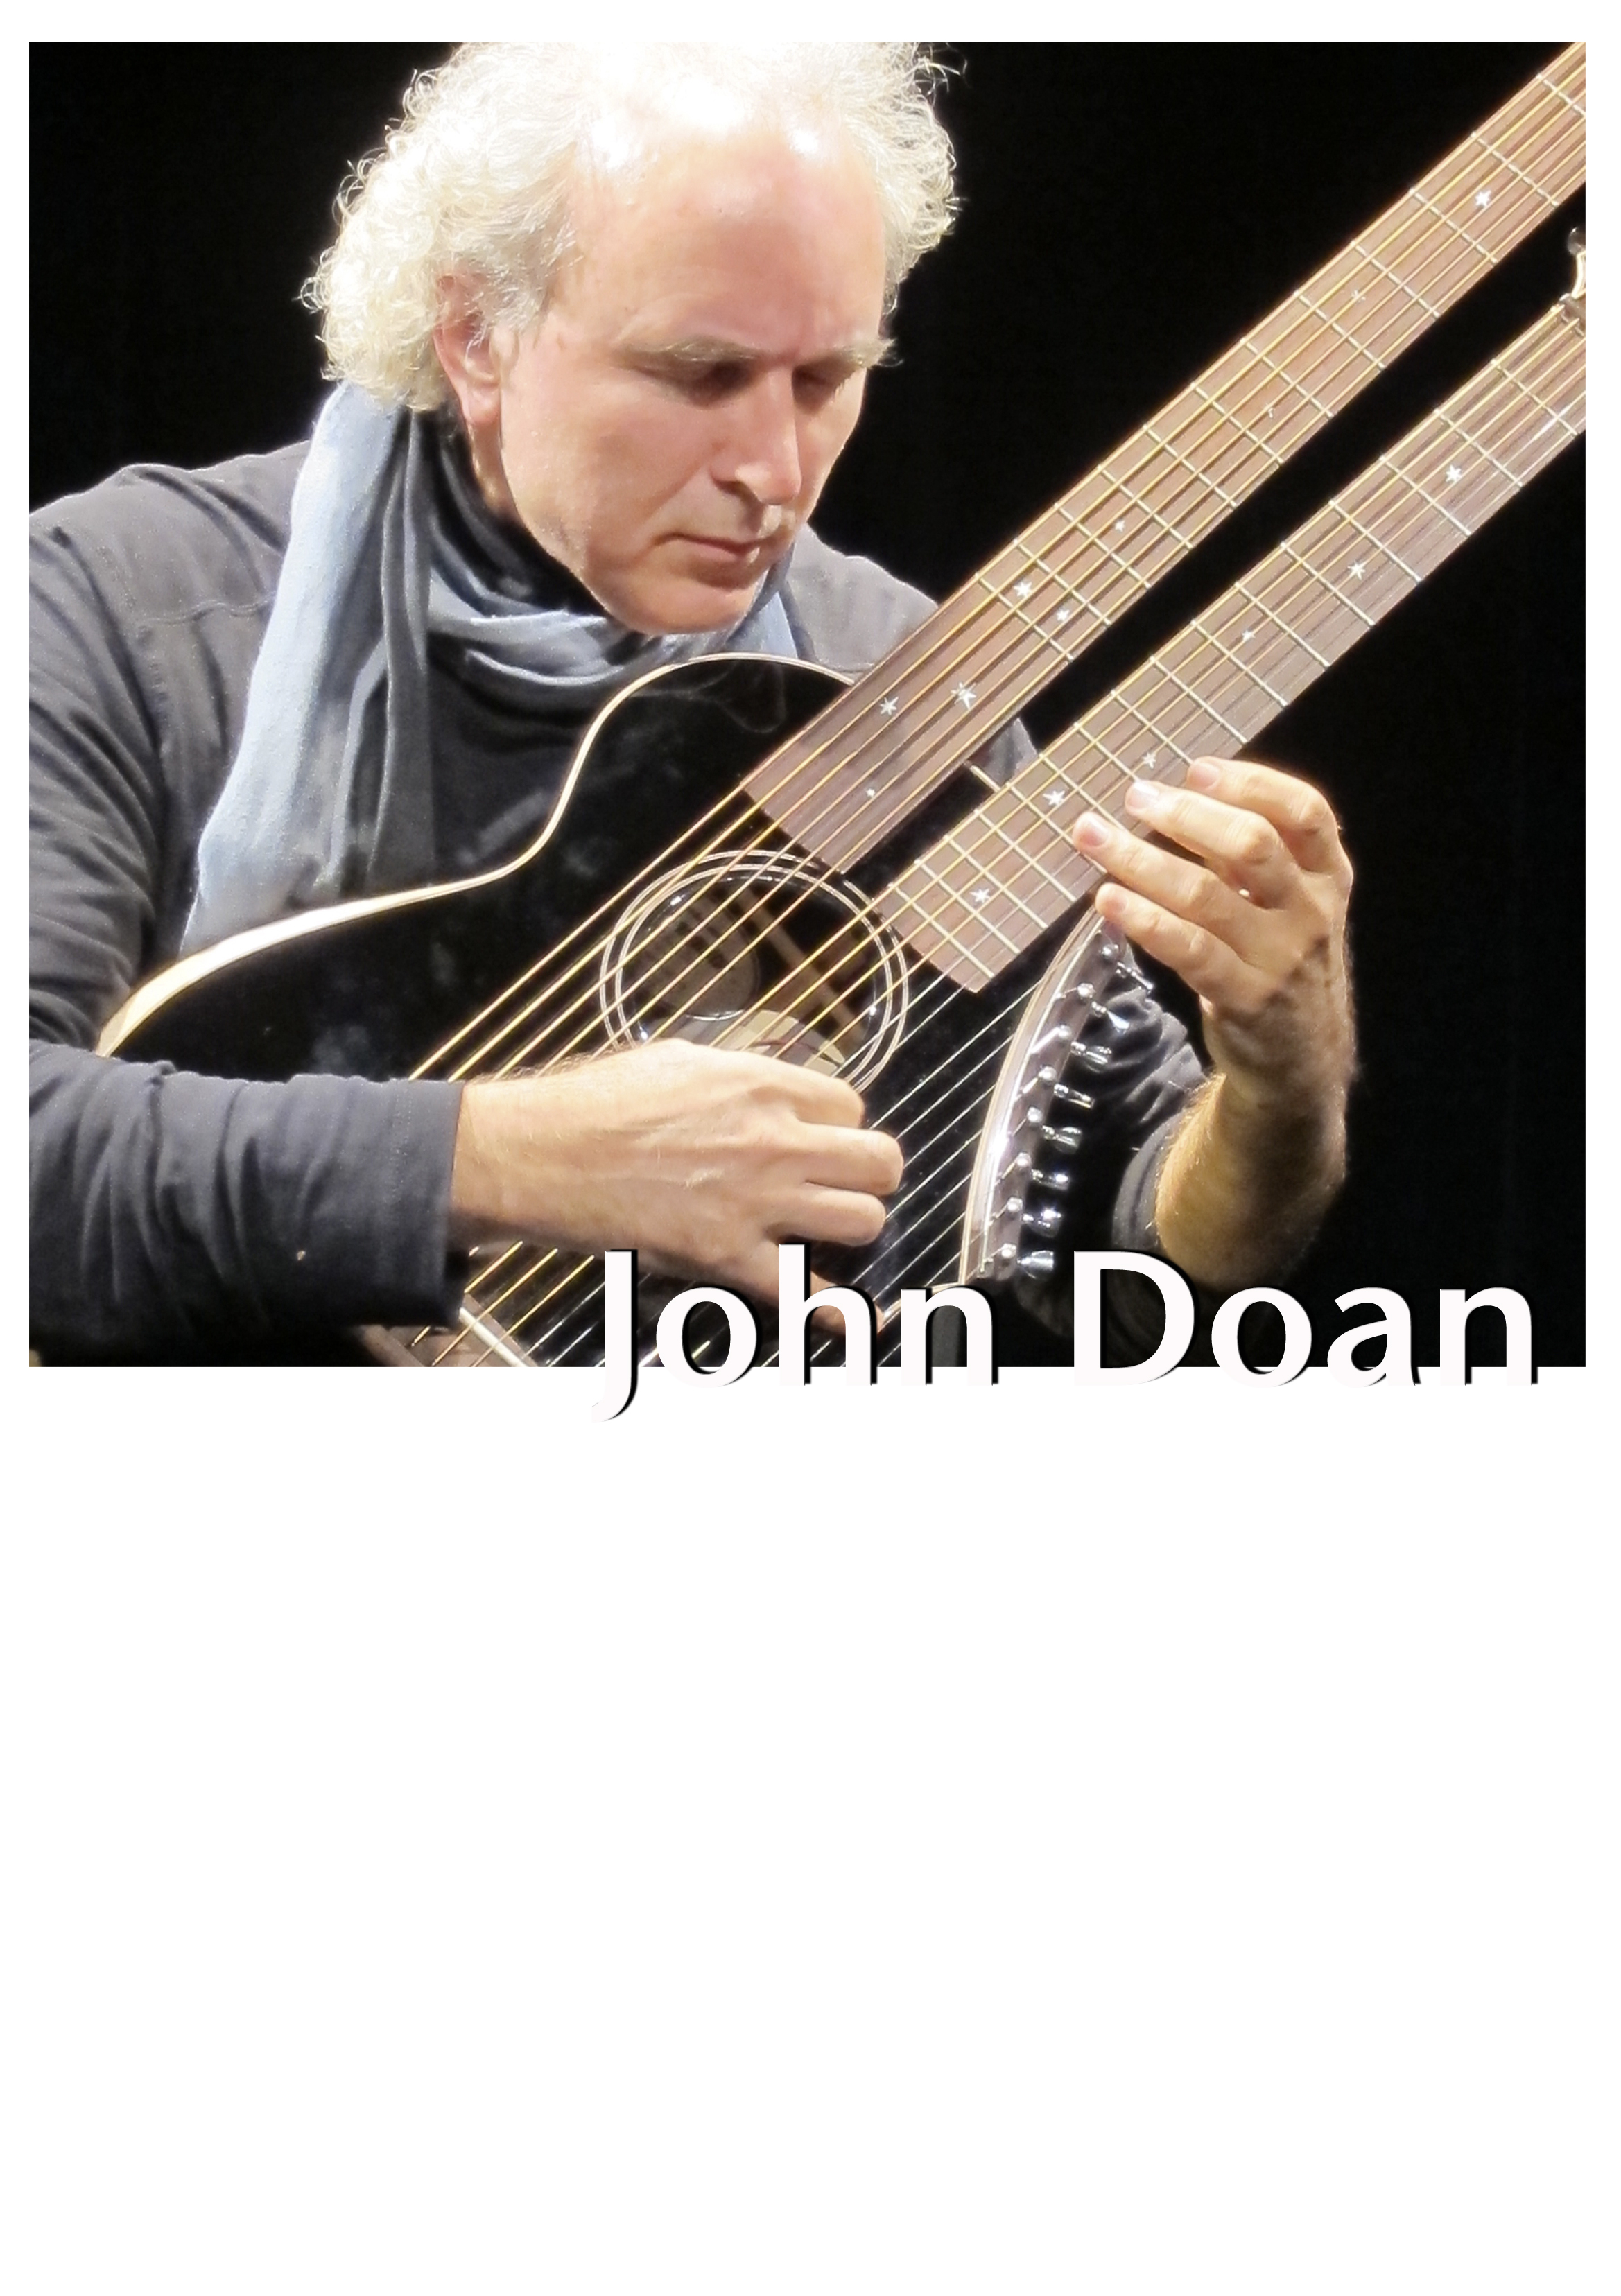 Beyond Six Strings - John Doan Poster Name